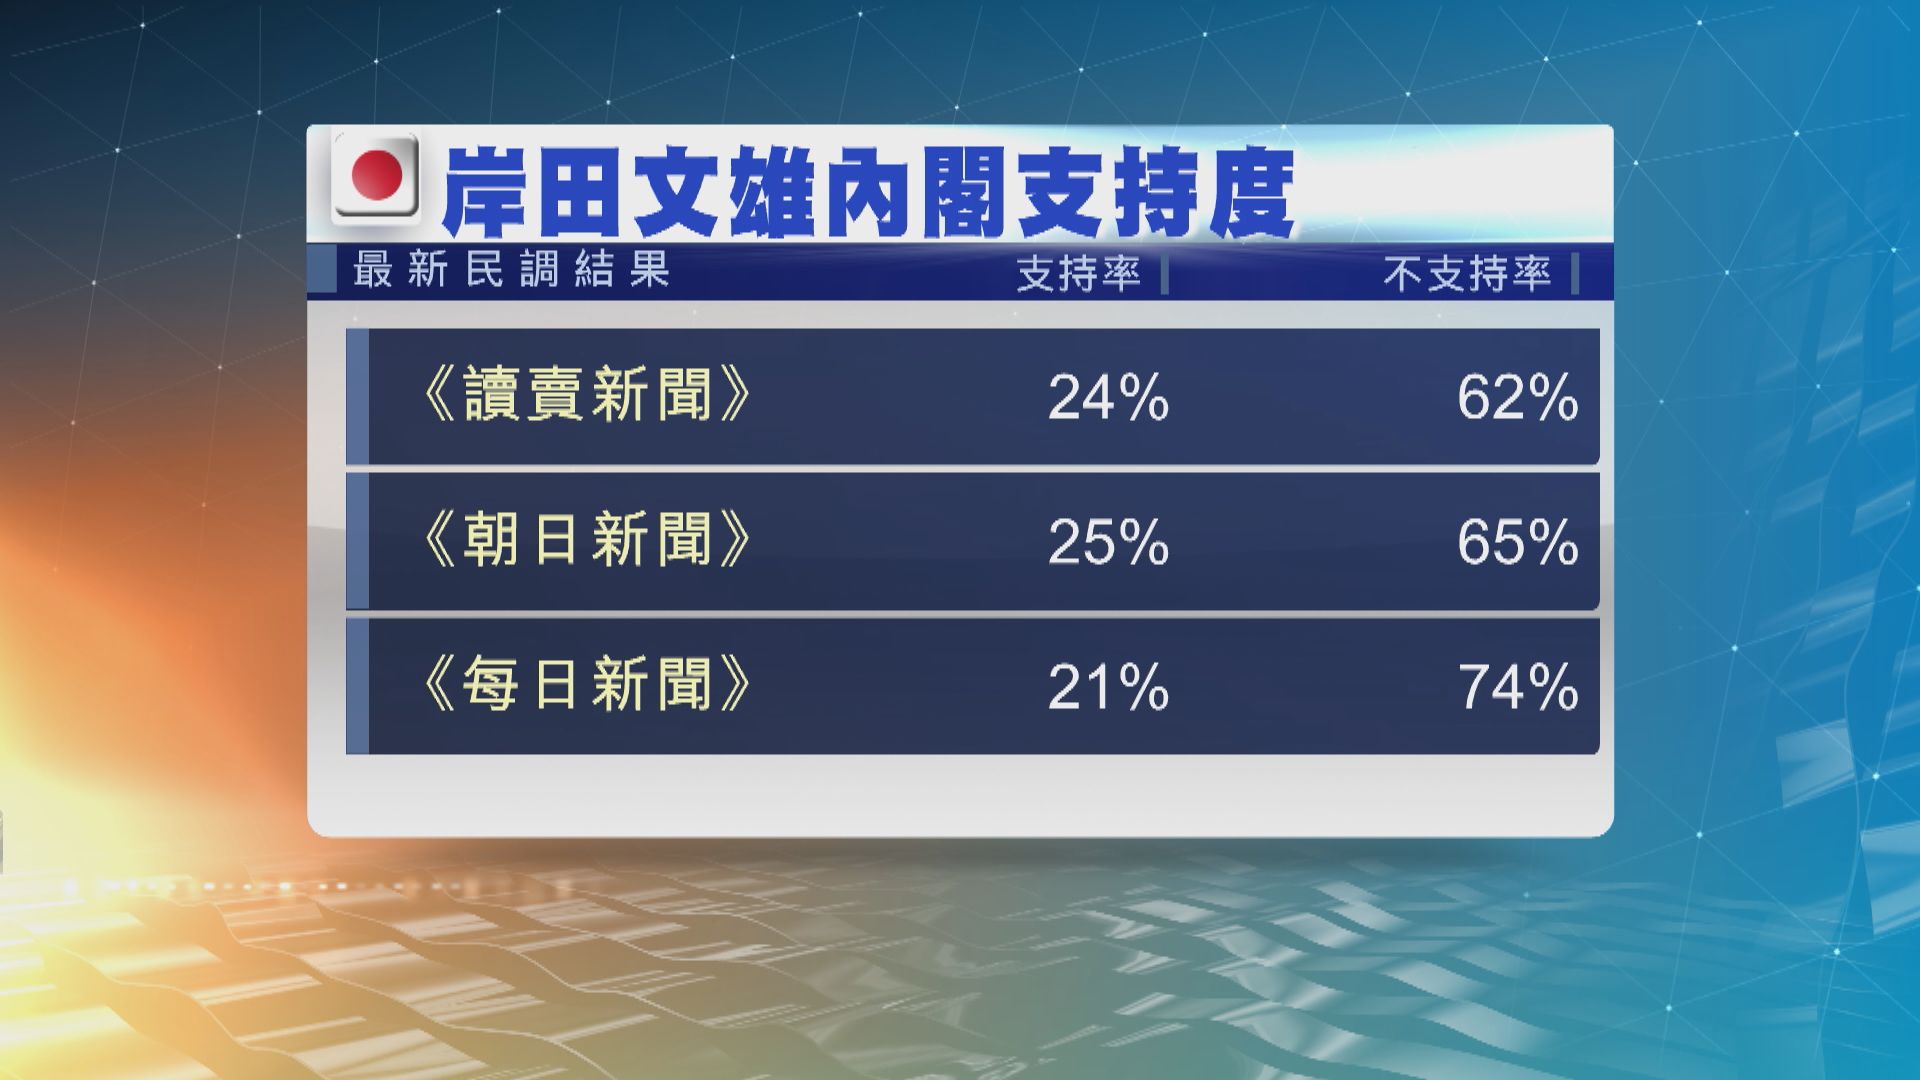 日本多項民調顯示岸田內閣支持度再創新低